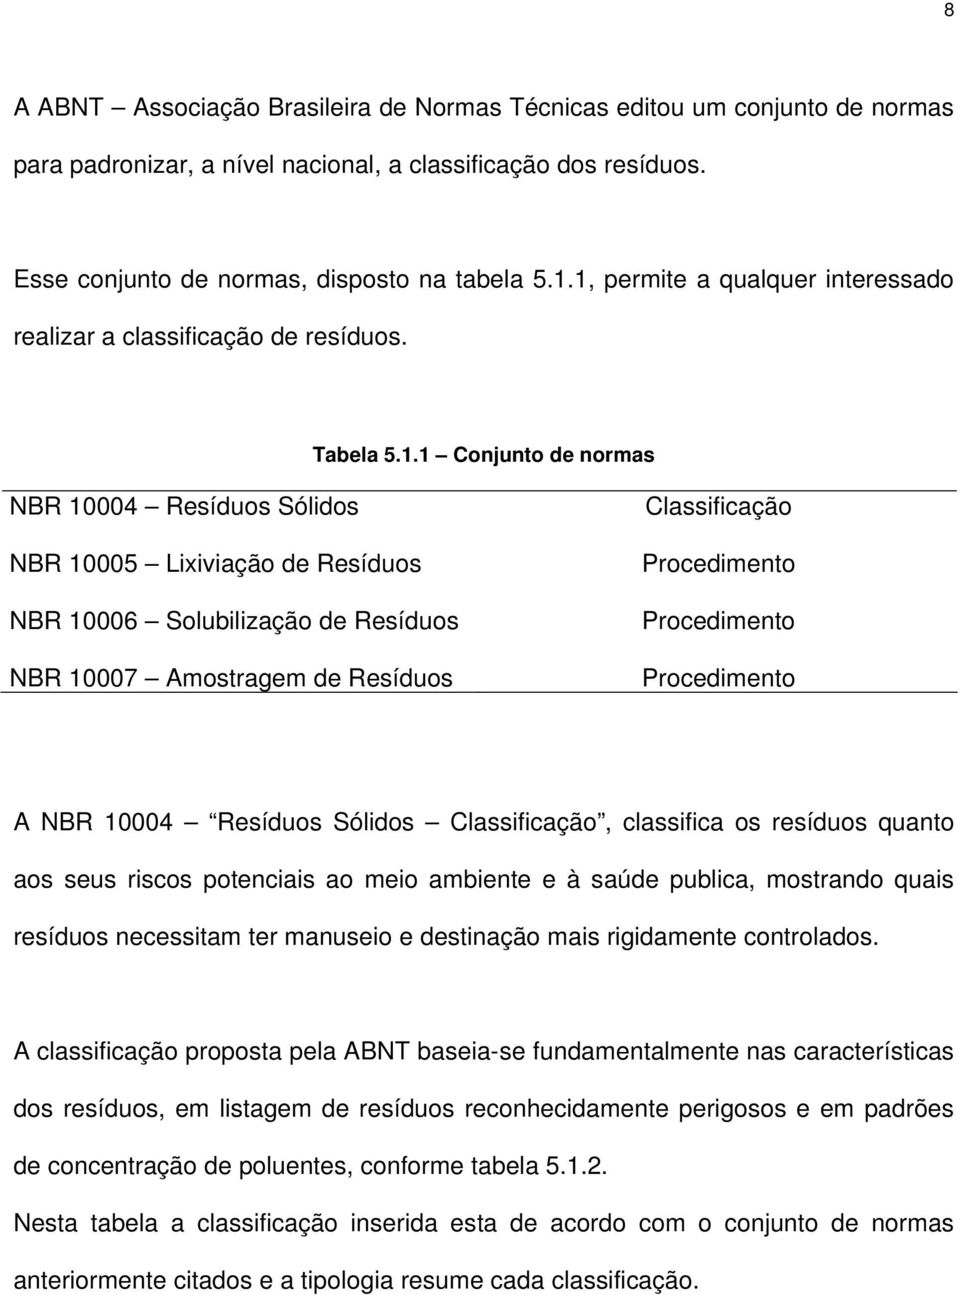 NBR 10007 Amostragem de Resíduos Classificação Procedimento Procedimento Procedimento A NBR 10004 Resíduos Sólidos Classificação, classifica os resíduos quanto aos seus riscos potenciais ao meio